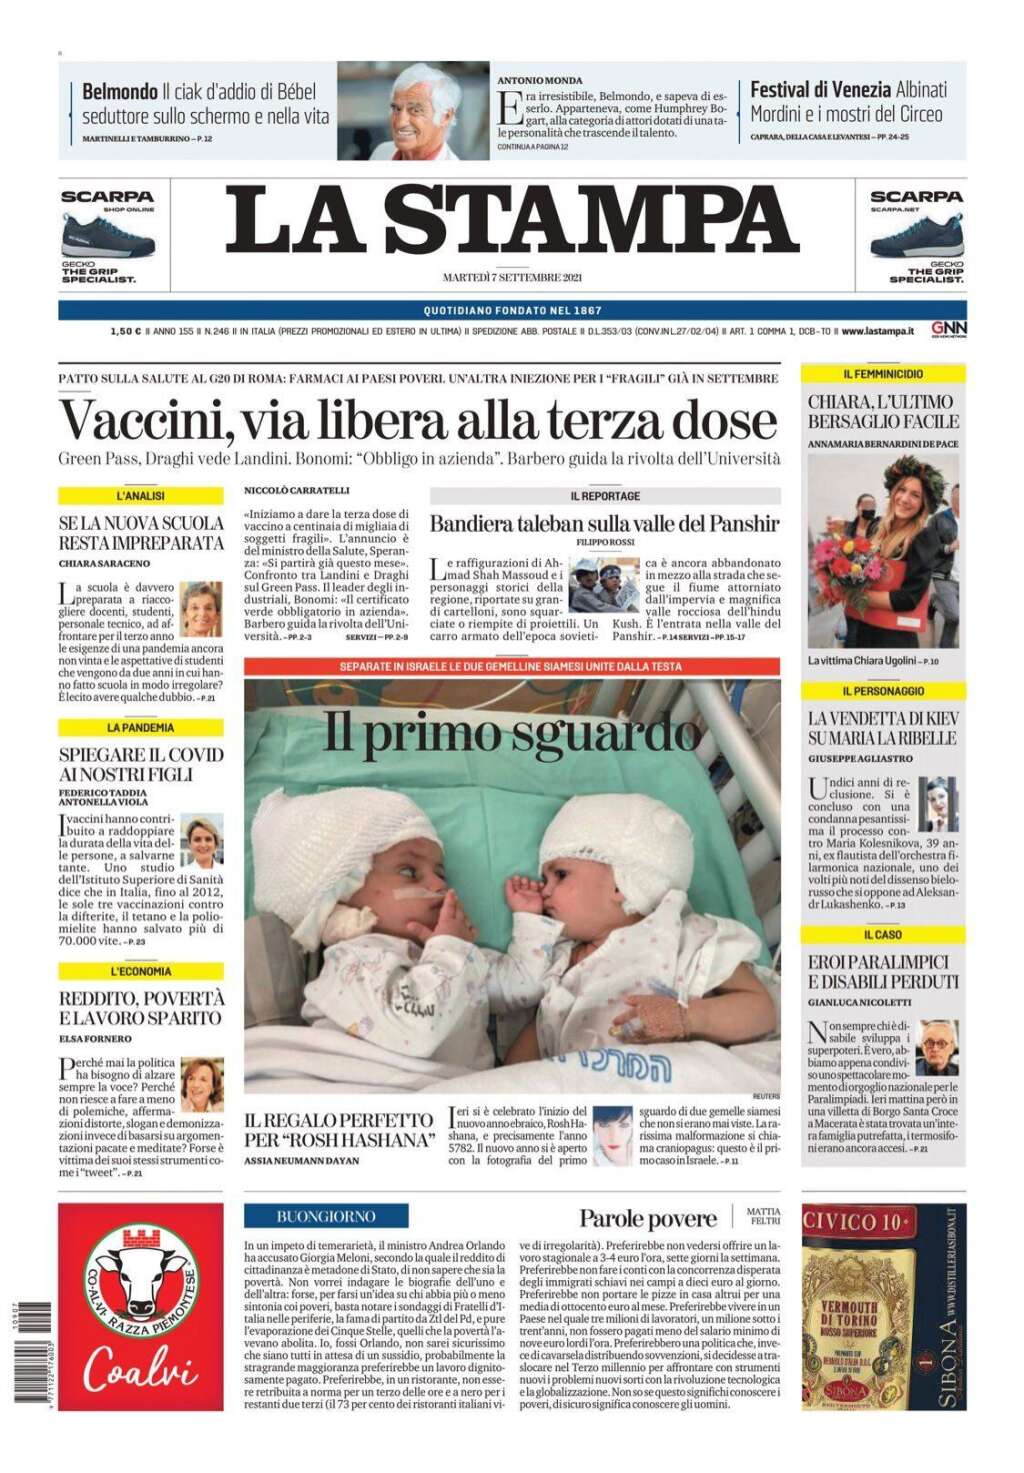 La Stampa - Cet autre quotidien italien évoque "Bebel", le "séducteur" de la Nouvelle vague.